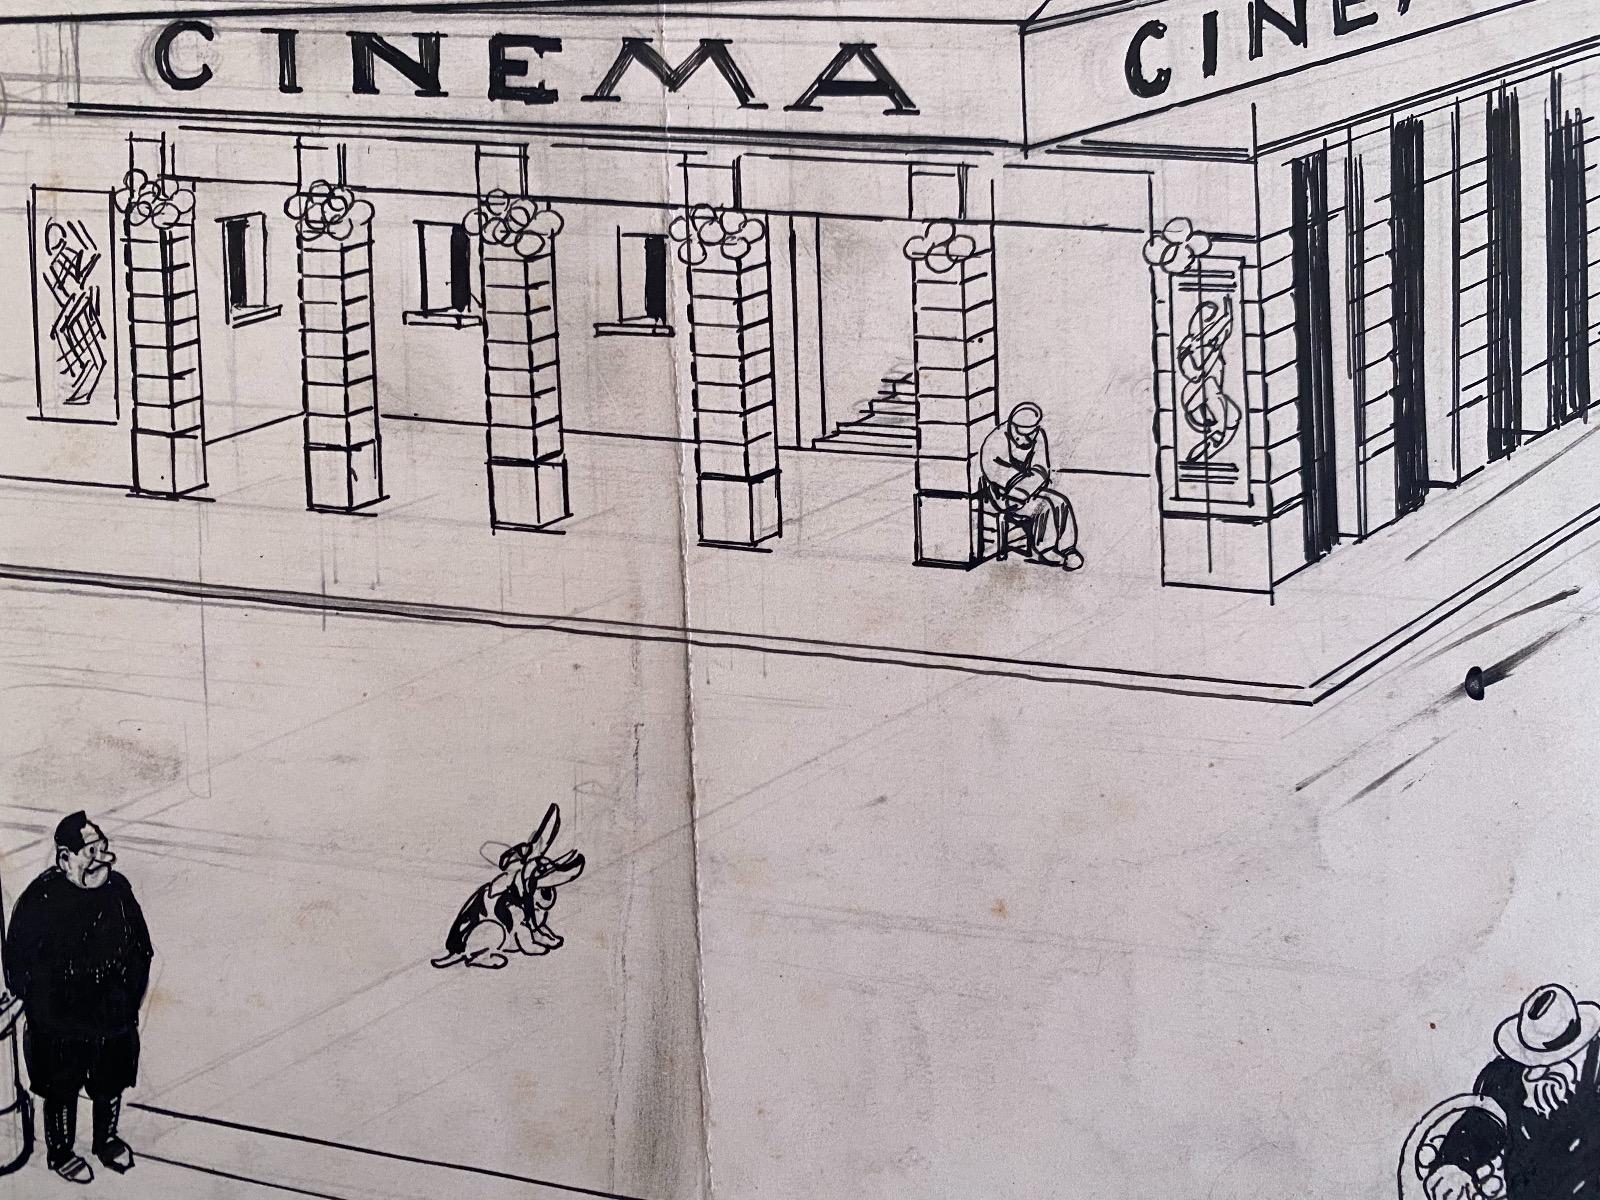 Das Kino ist eine Originalzeichnung in Porzellantinte auf cremefarbenem Papier realisiert  von Gabriele Galantara (1865-1937) zu Beginn des 20. Jahrhunderts.

Unter guten Bedingungen.

Dies ist eine Originalzeichnung, die den Eingang zu einem Kino